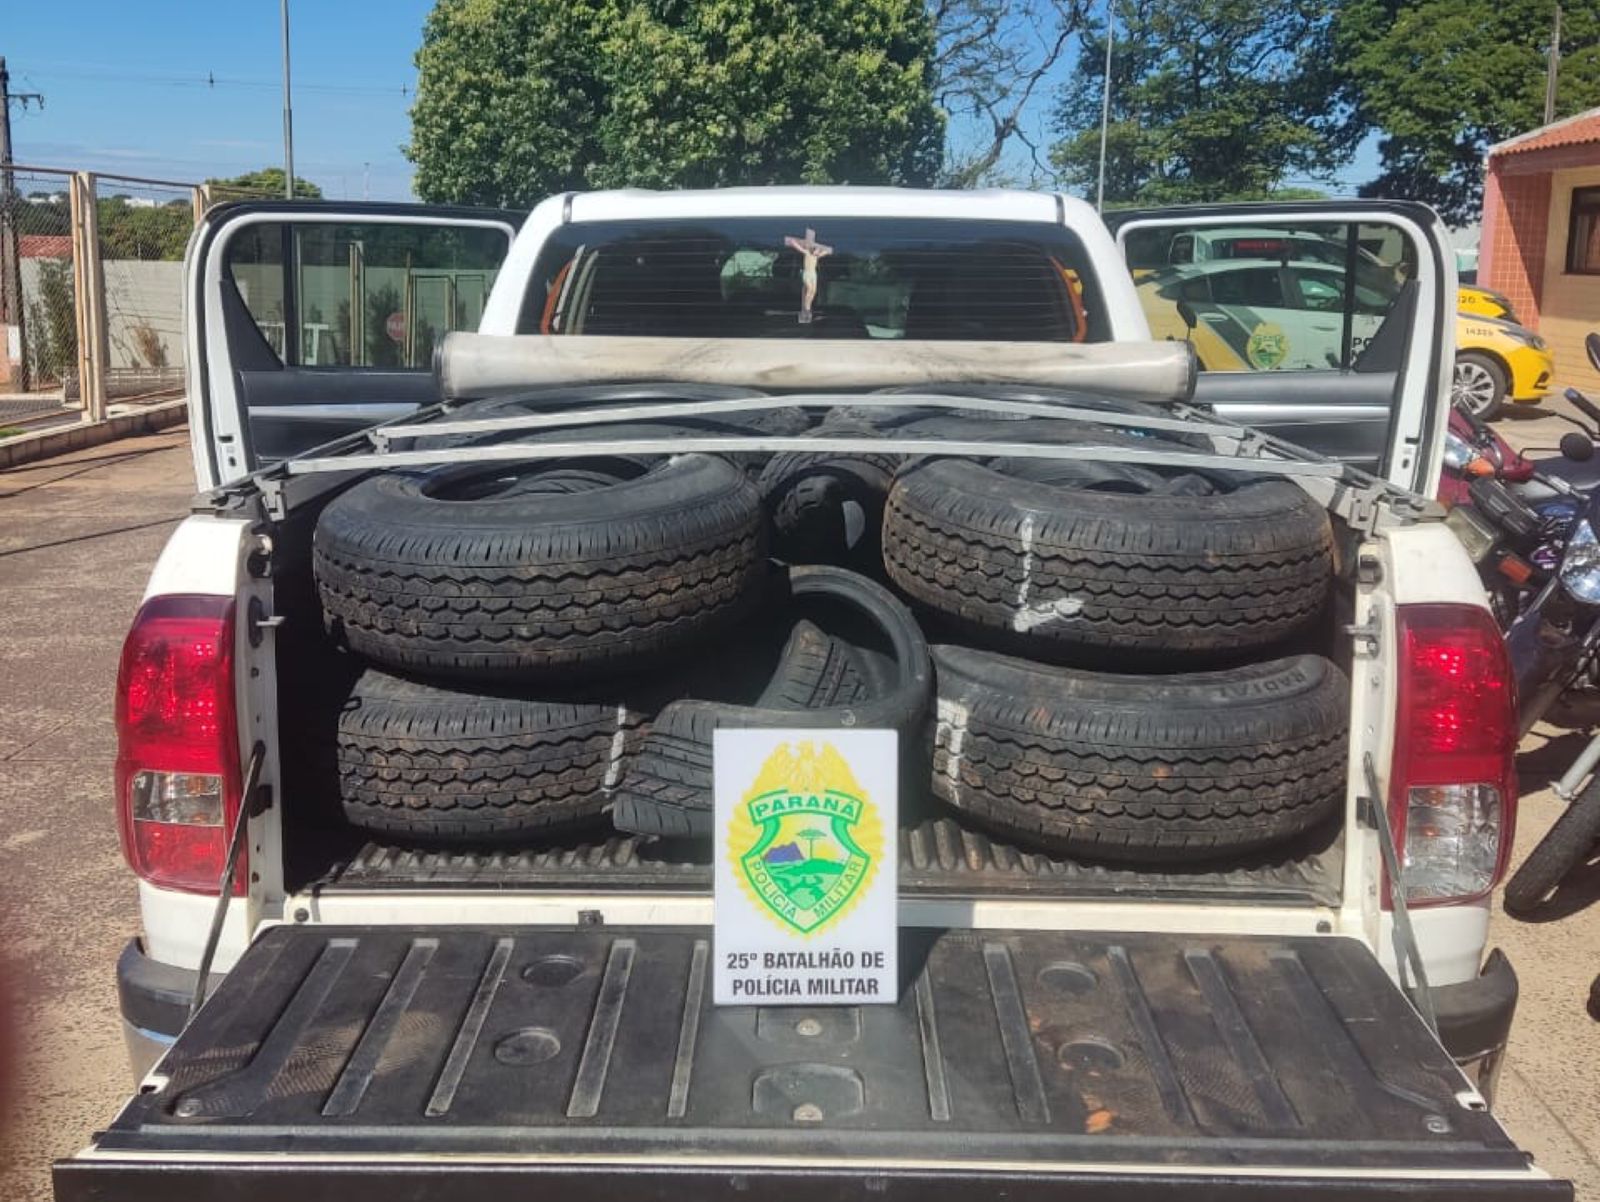 Jornal Ilustrado - Caminhonete com 60 pneus contrabandeados é apreendida pela PM em Umuarama